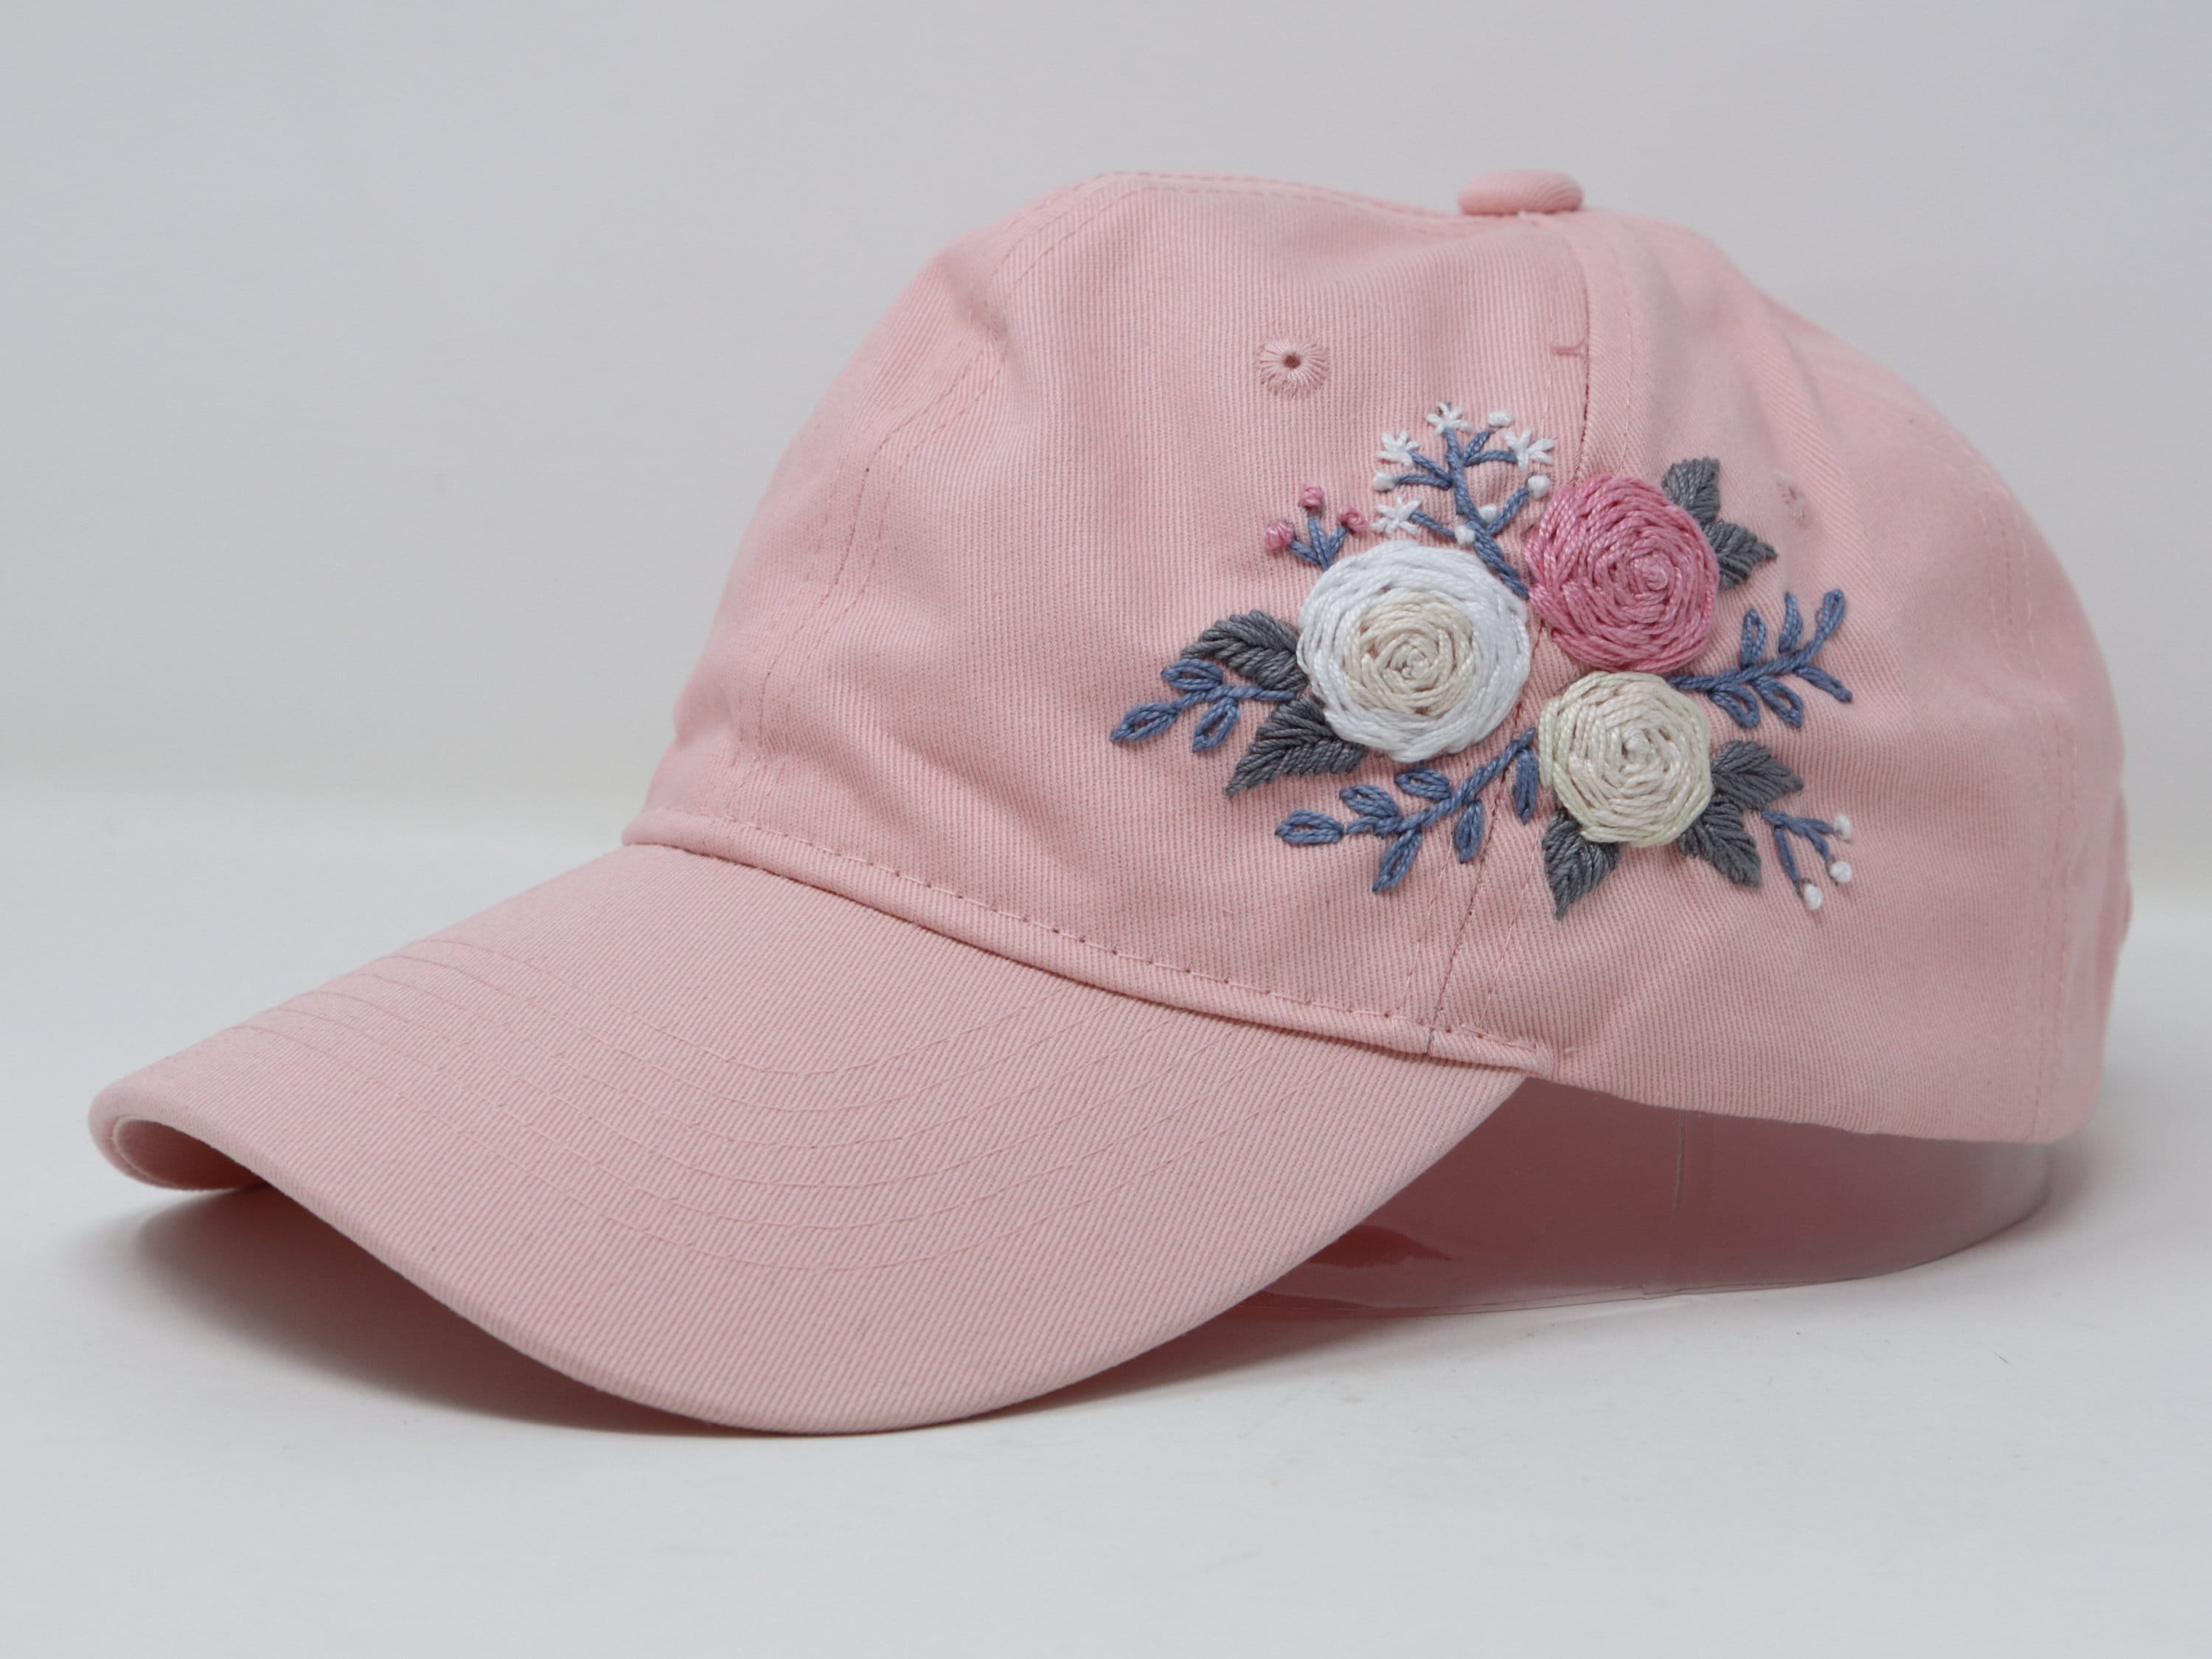 skrige arbejder uformel 100% Cotton Baseball Cap Hand Embroidered Rose Flower Hat - Etsy Canada